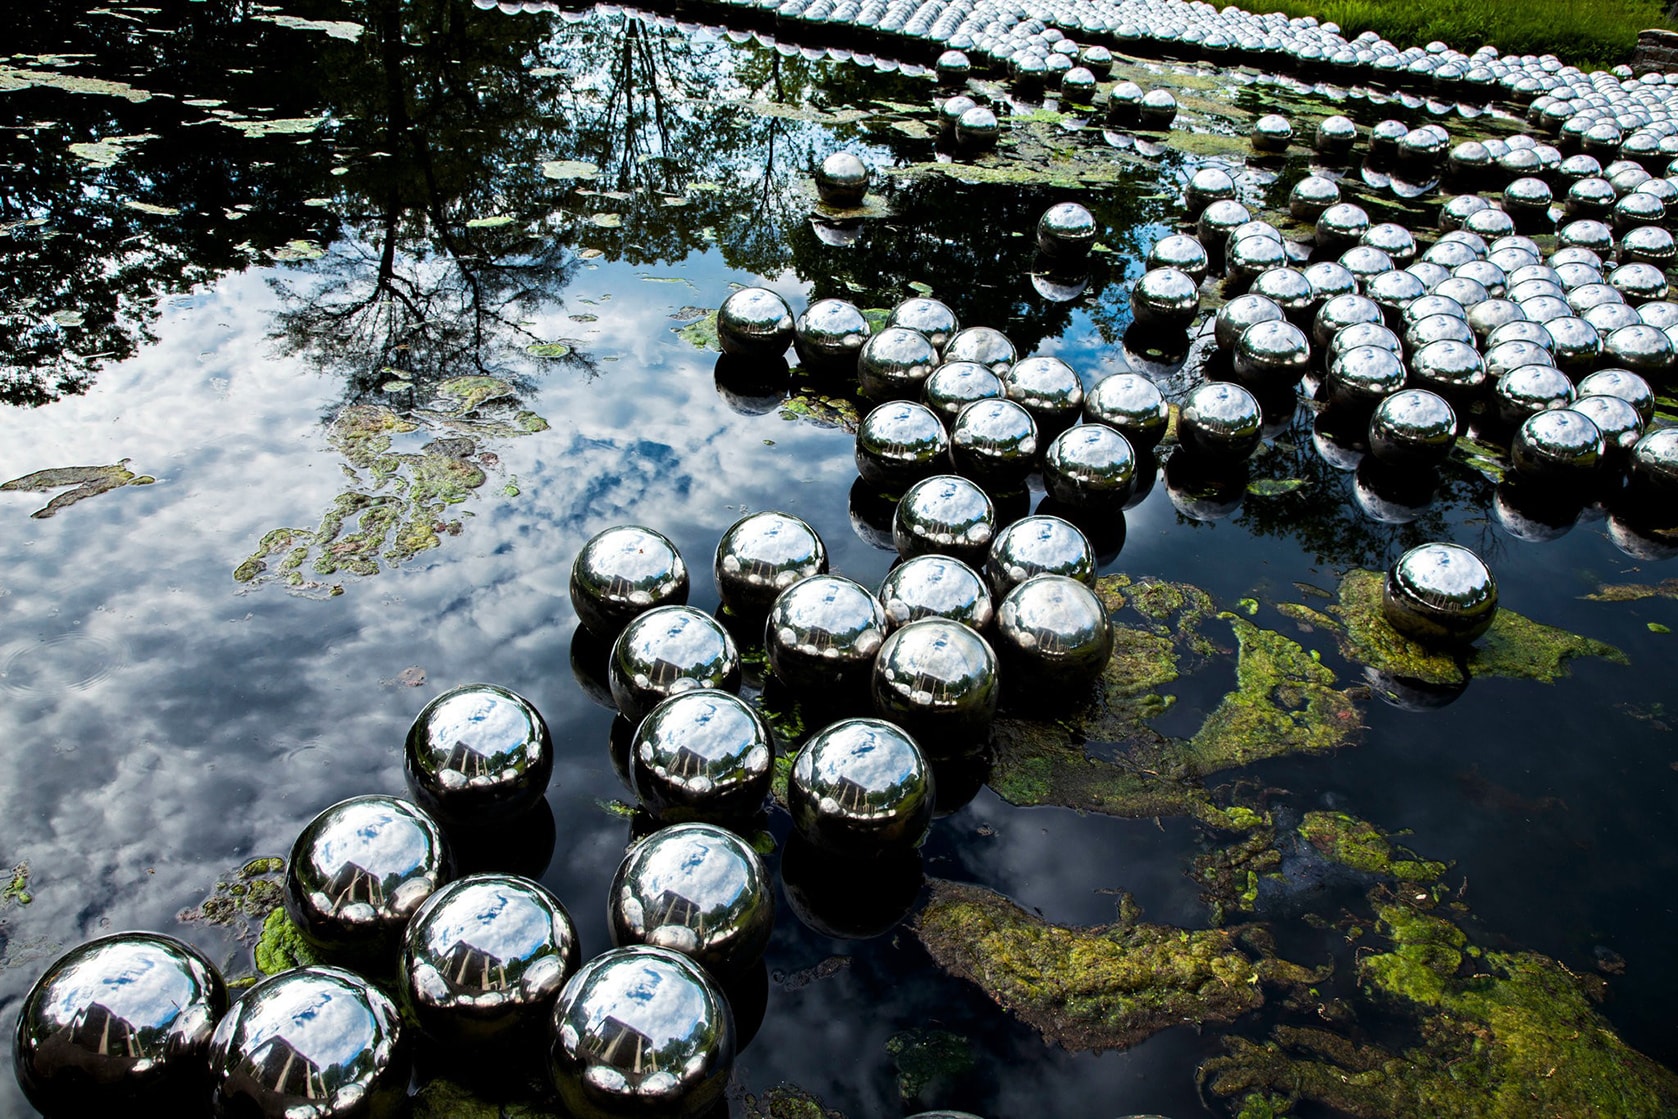 草間彌生時隔 50 年後再度於紐約展出裝置藝術「Narcissus Garden」